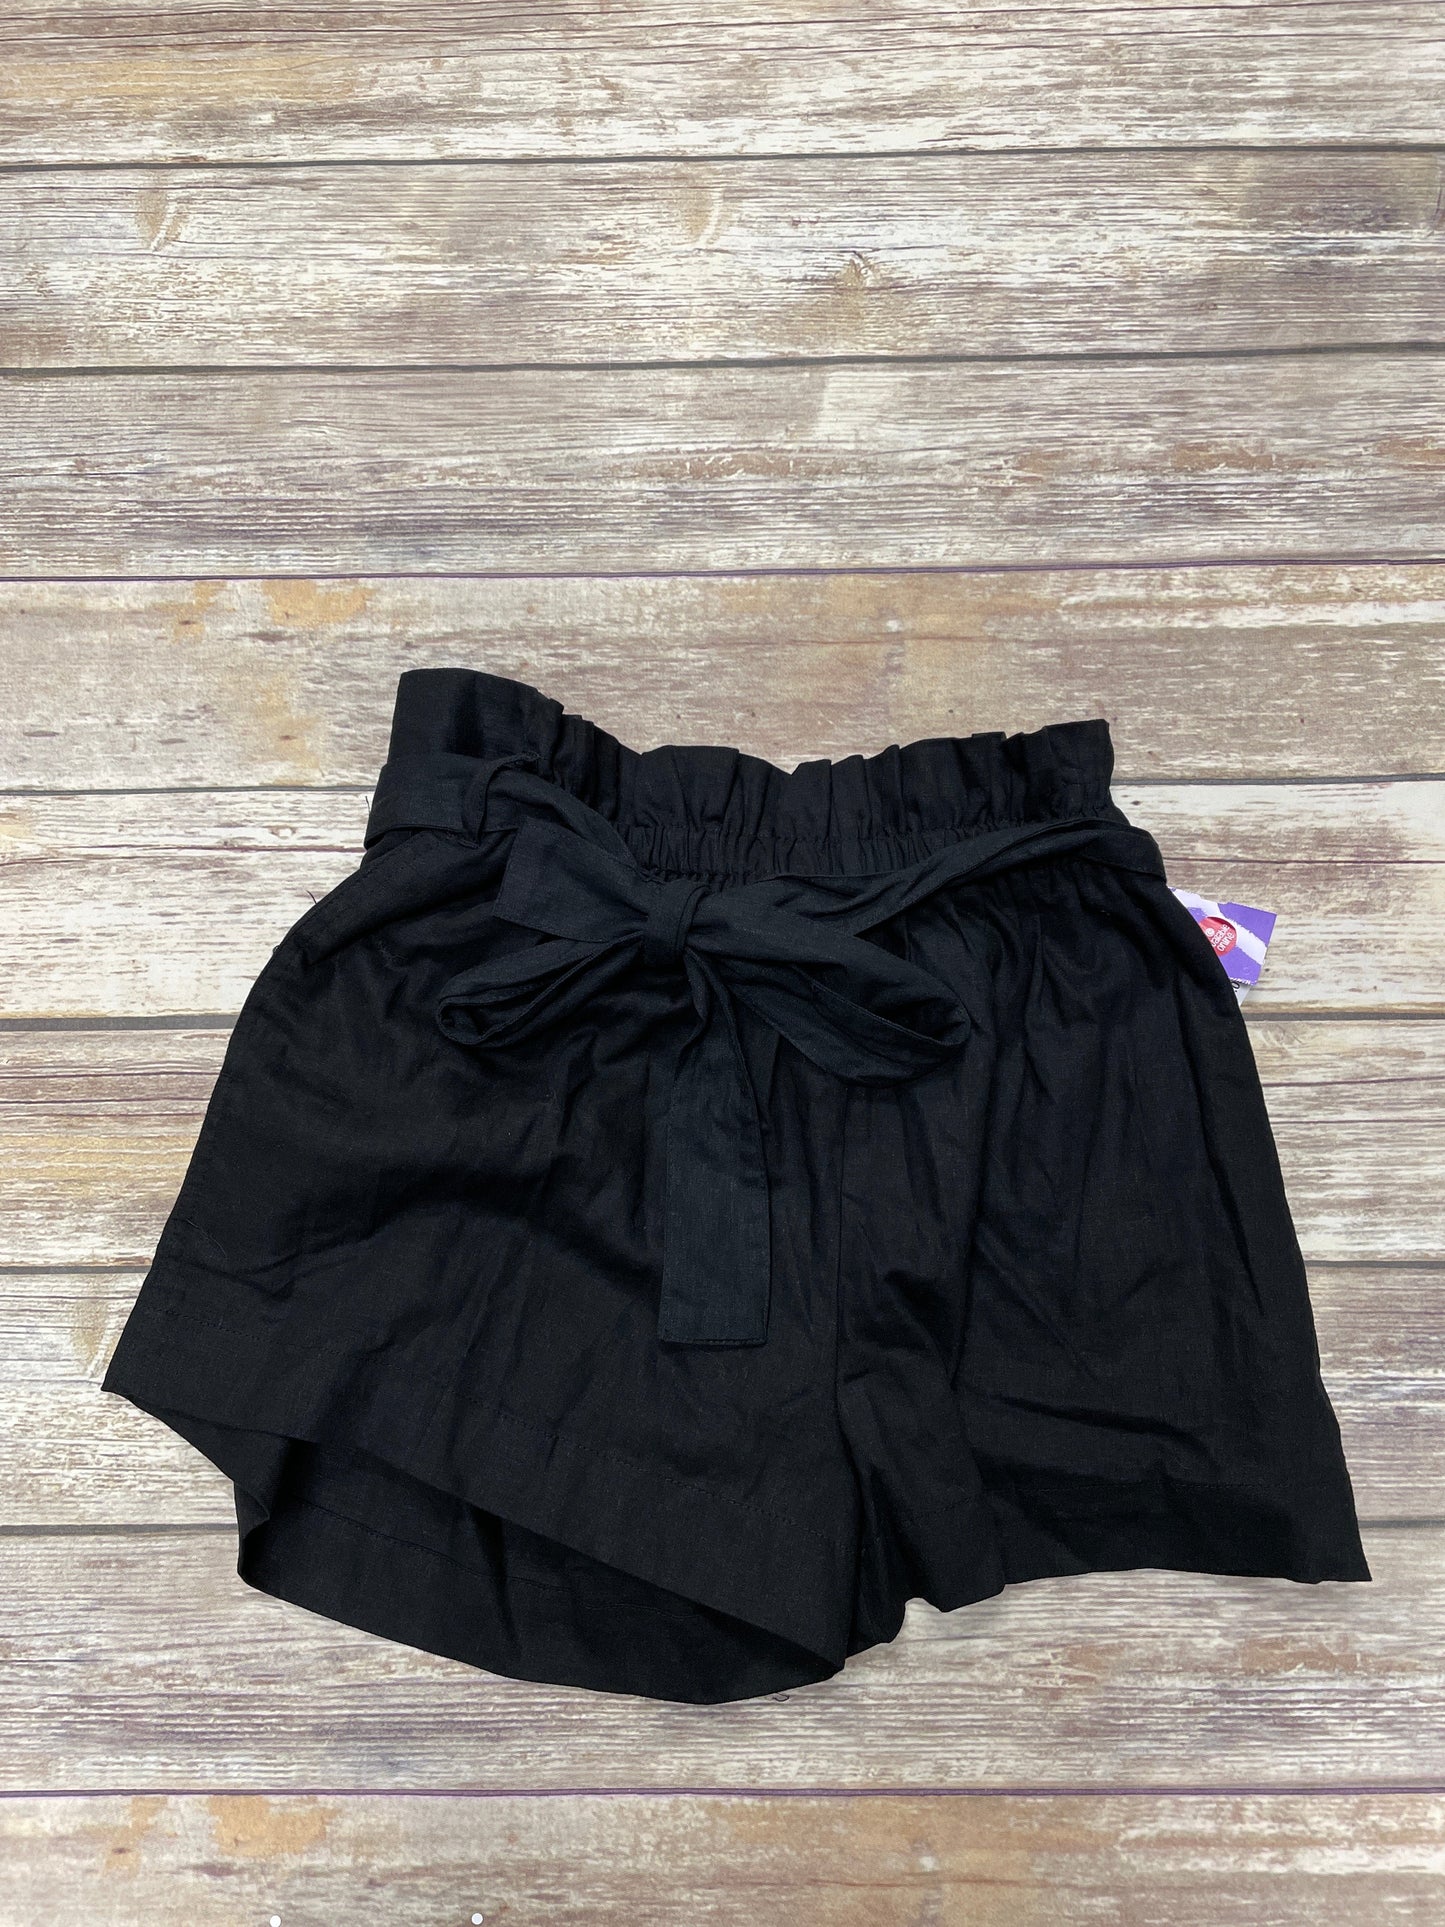 Black Shorts Ophelia Roe, Size 1x